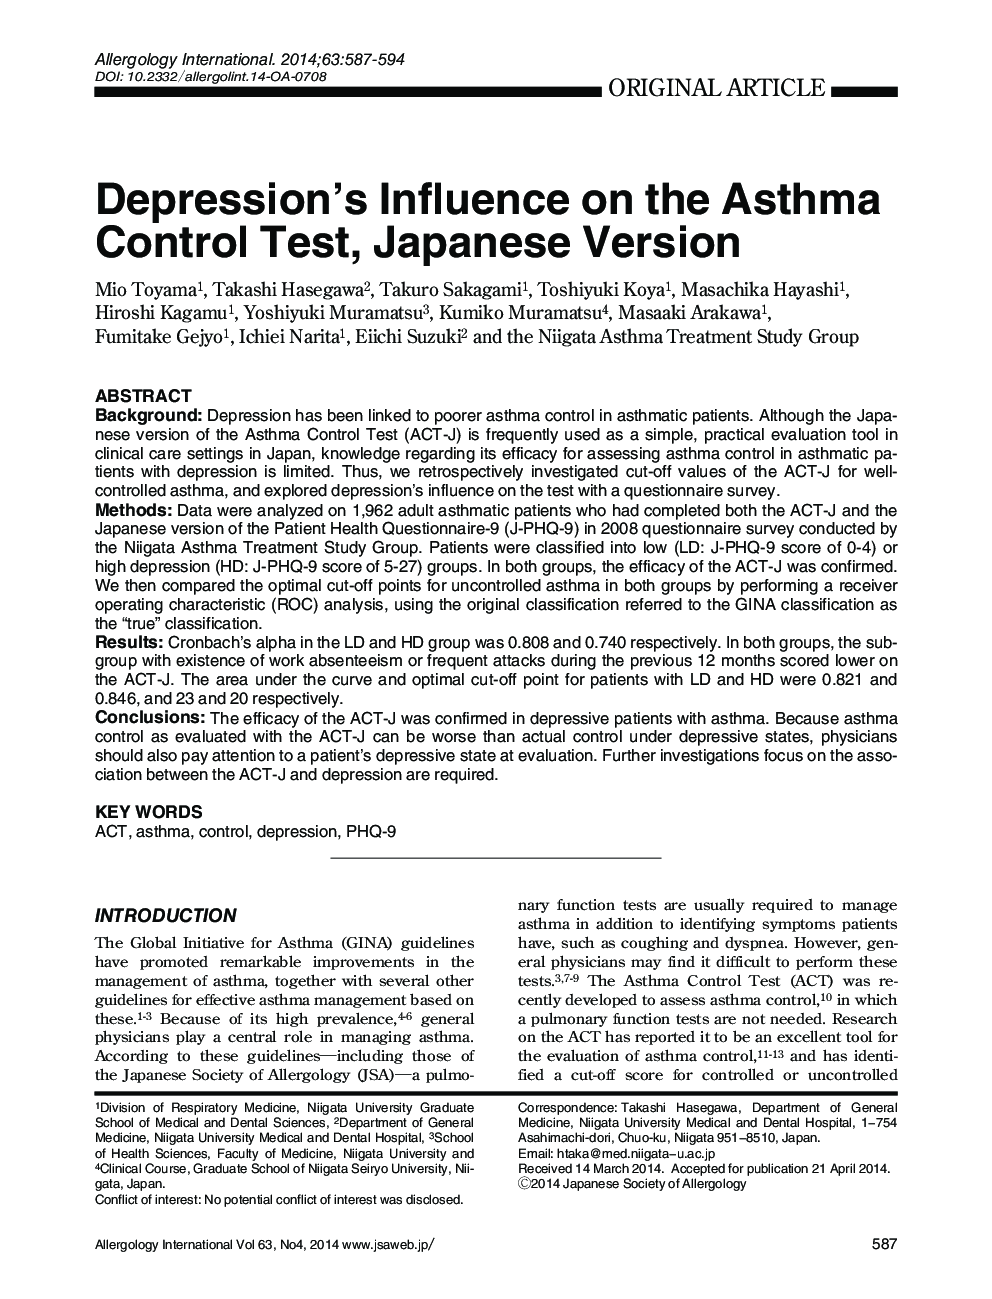 تأثیر افسردگی در آزمون کنترل آسم، نسخه ژاپنی 